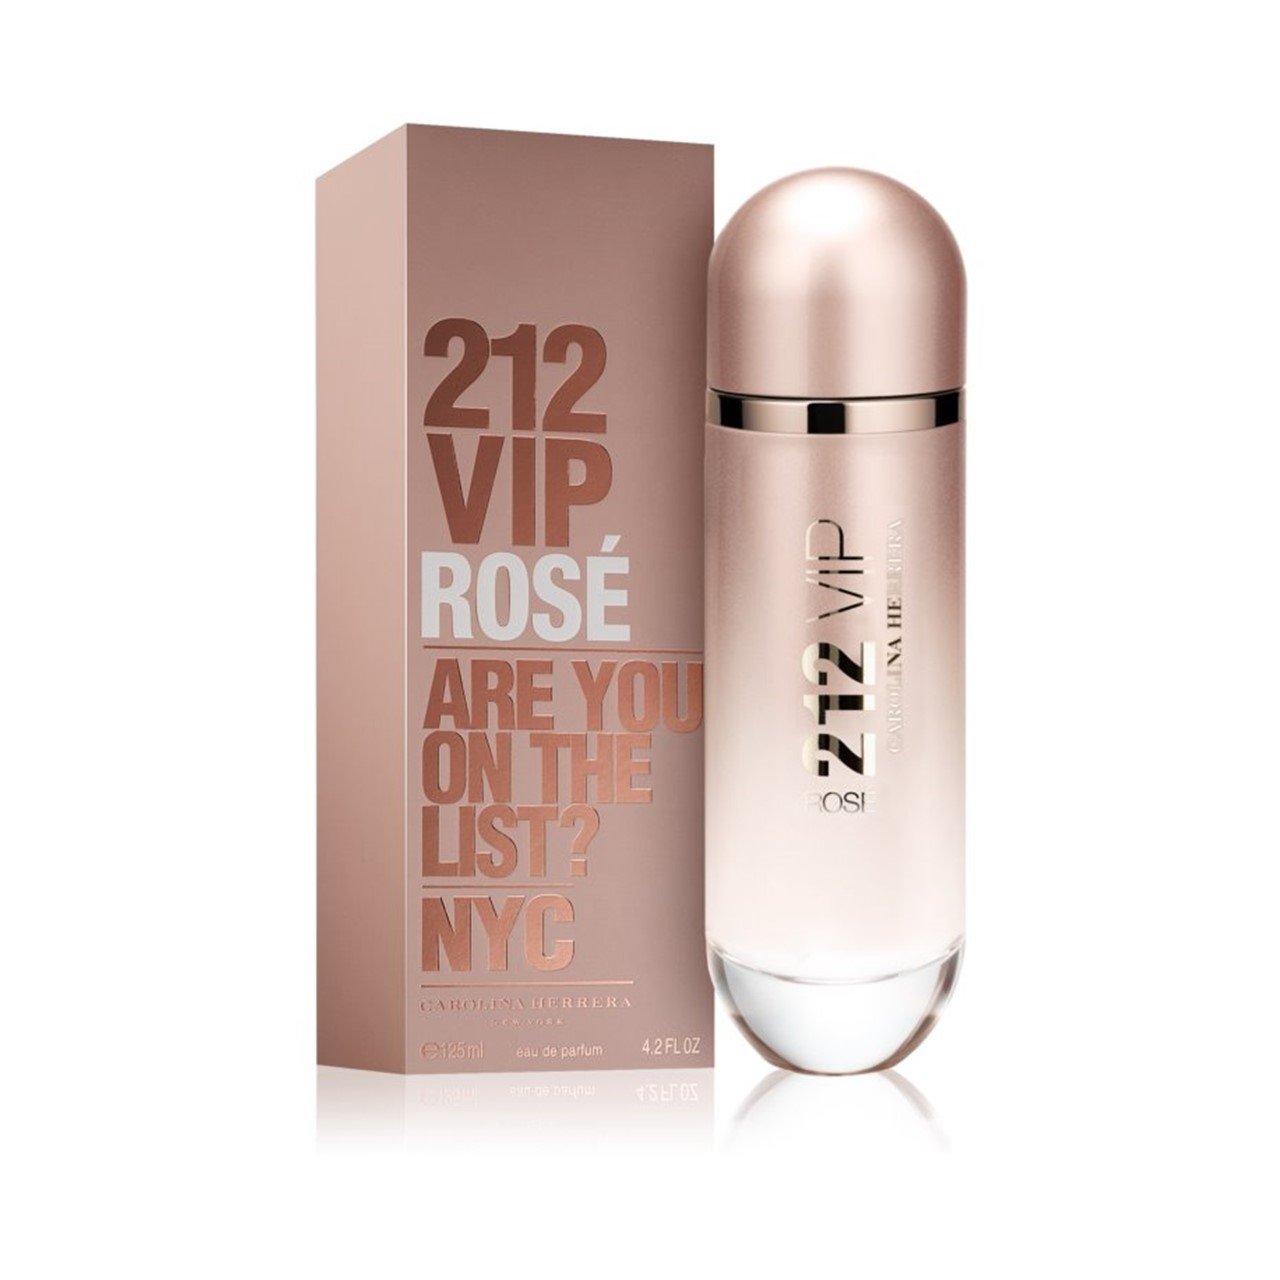 212 Vip Rose Parfum | estudioespositoymiguel.com.ar